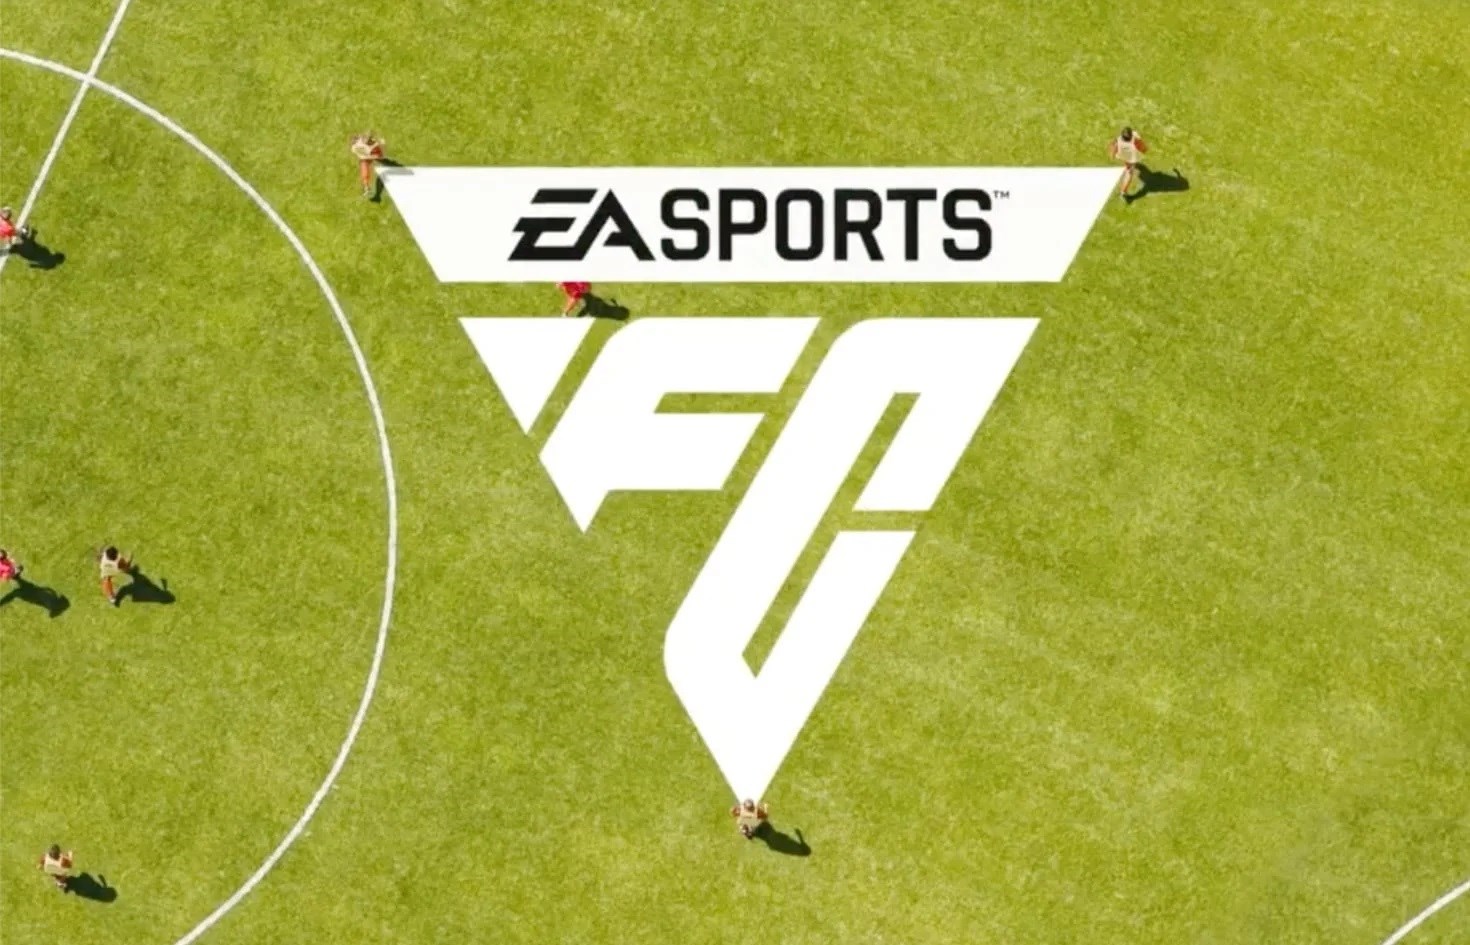 FIFA’nın yerini alan EA Sports FC’nin logosu paylaşıldı